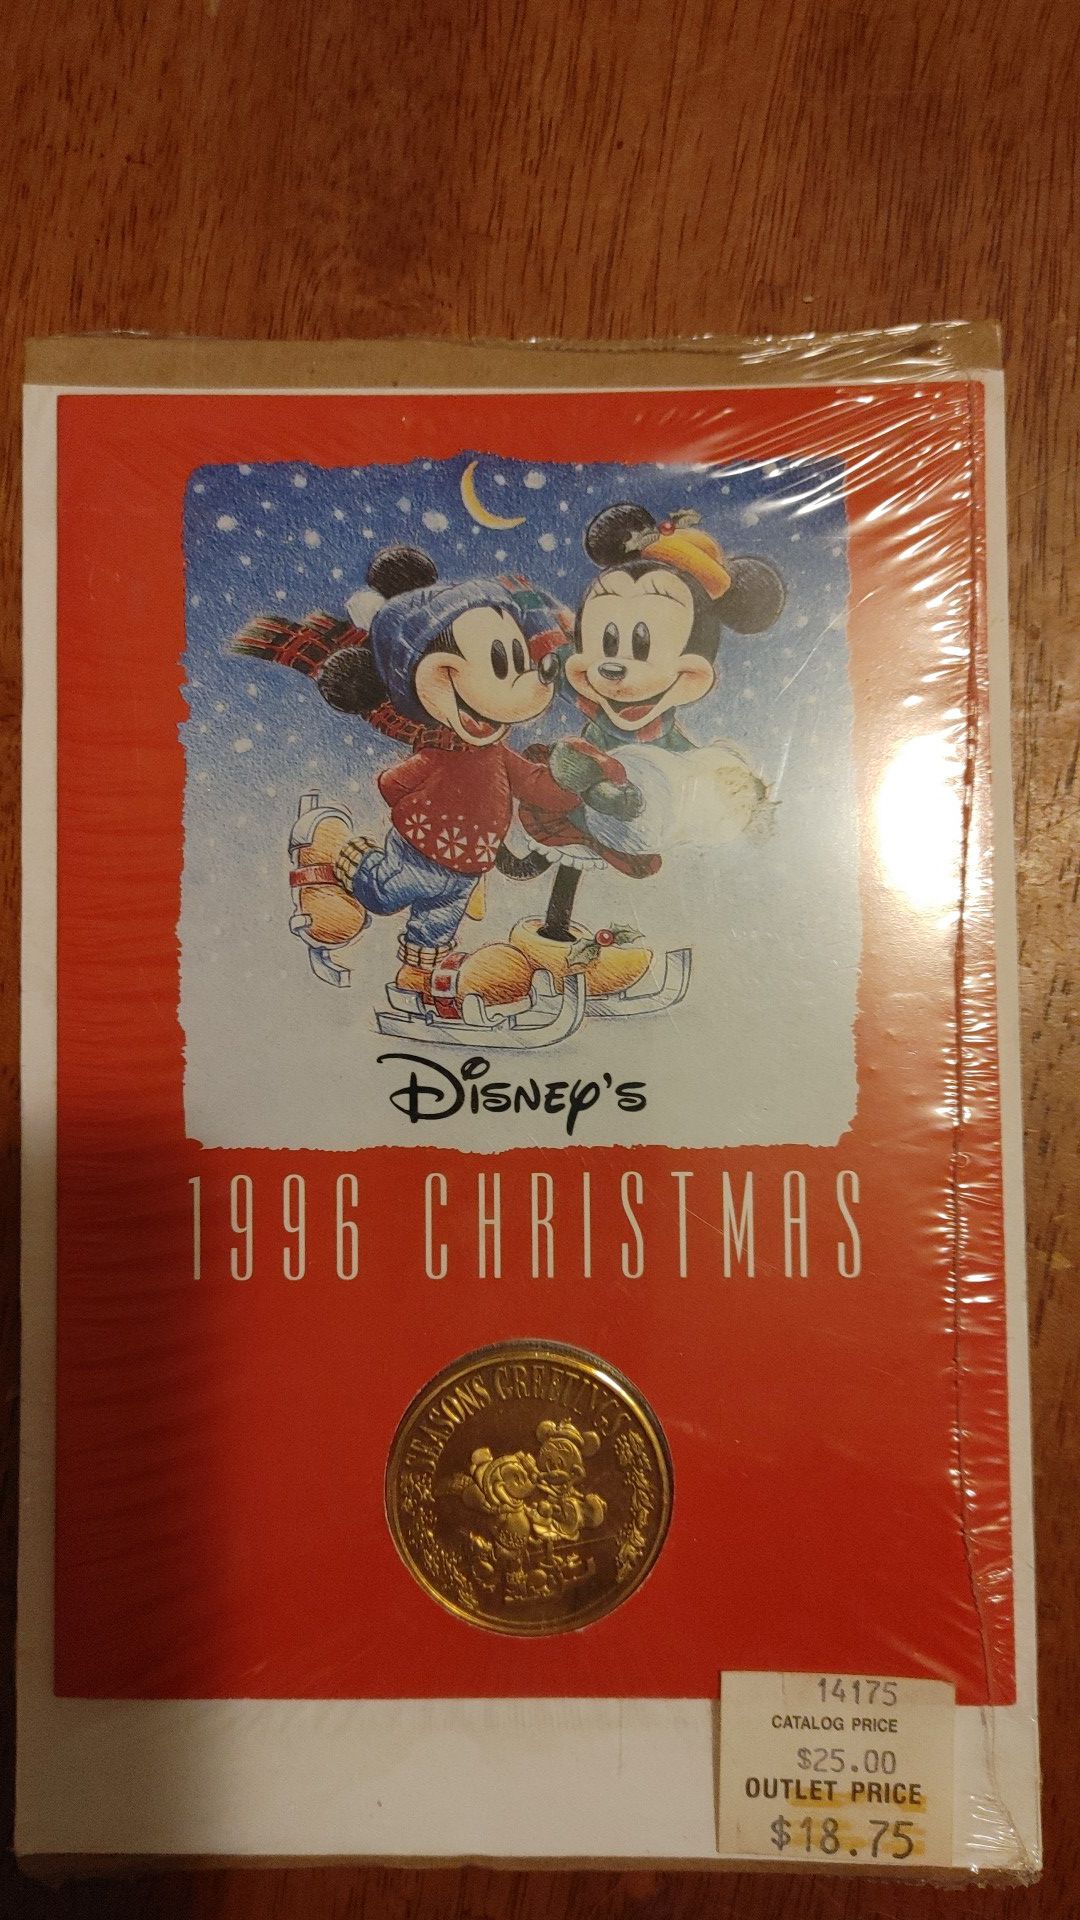 1996 collectables Disney's Christmas Coin